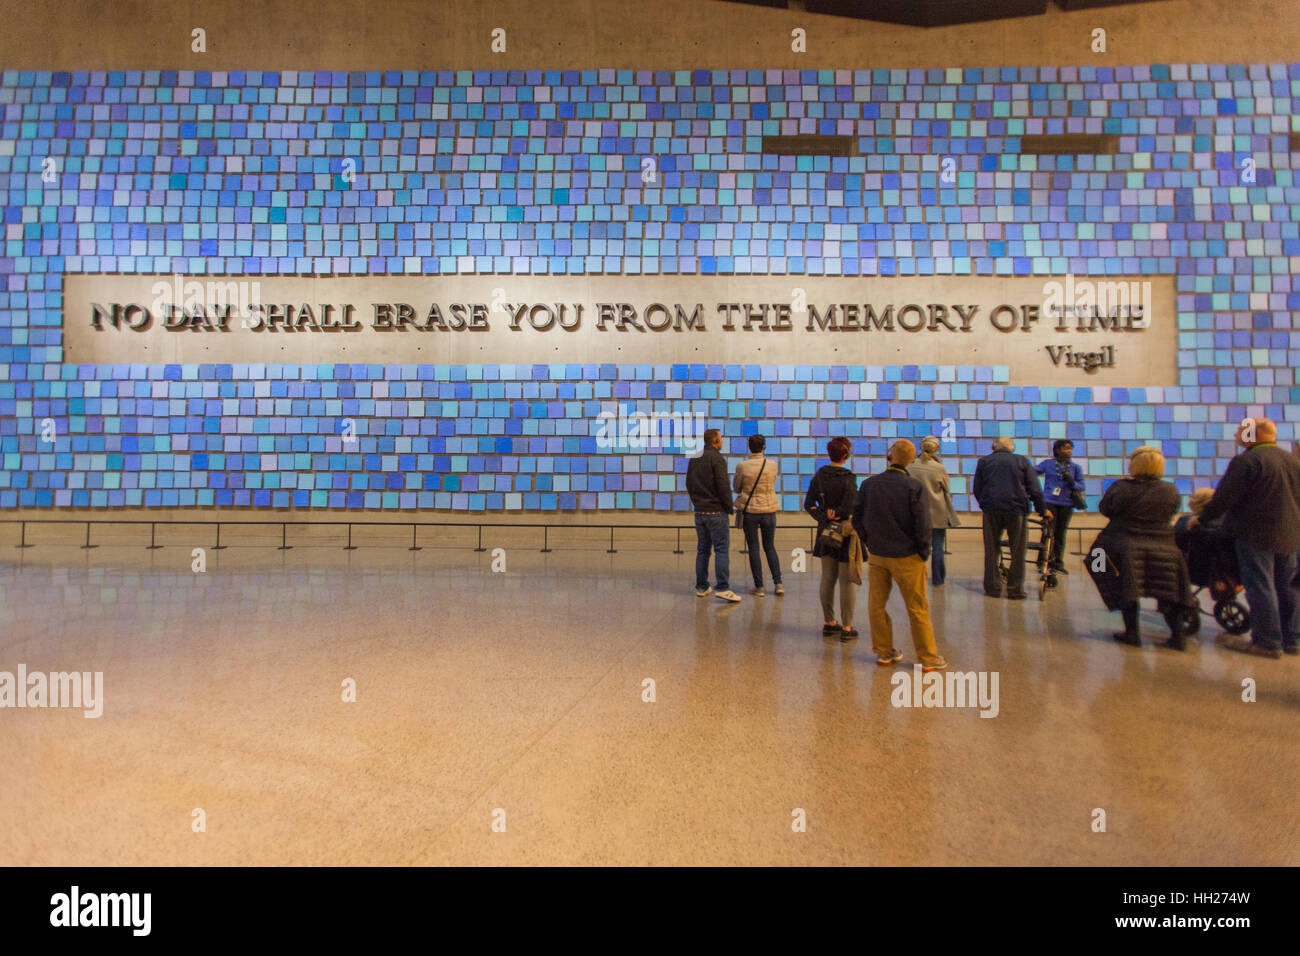 911 museum , Manhattan, New York City, United States of America. Stock Photo